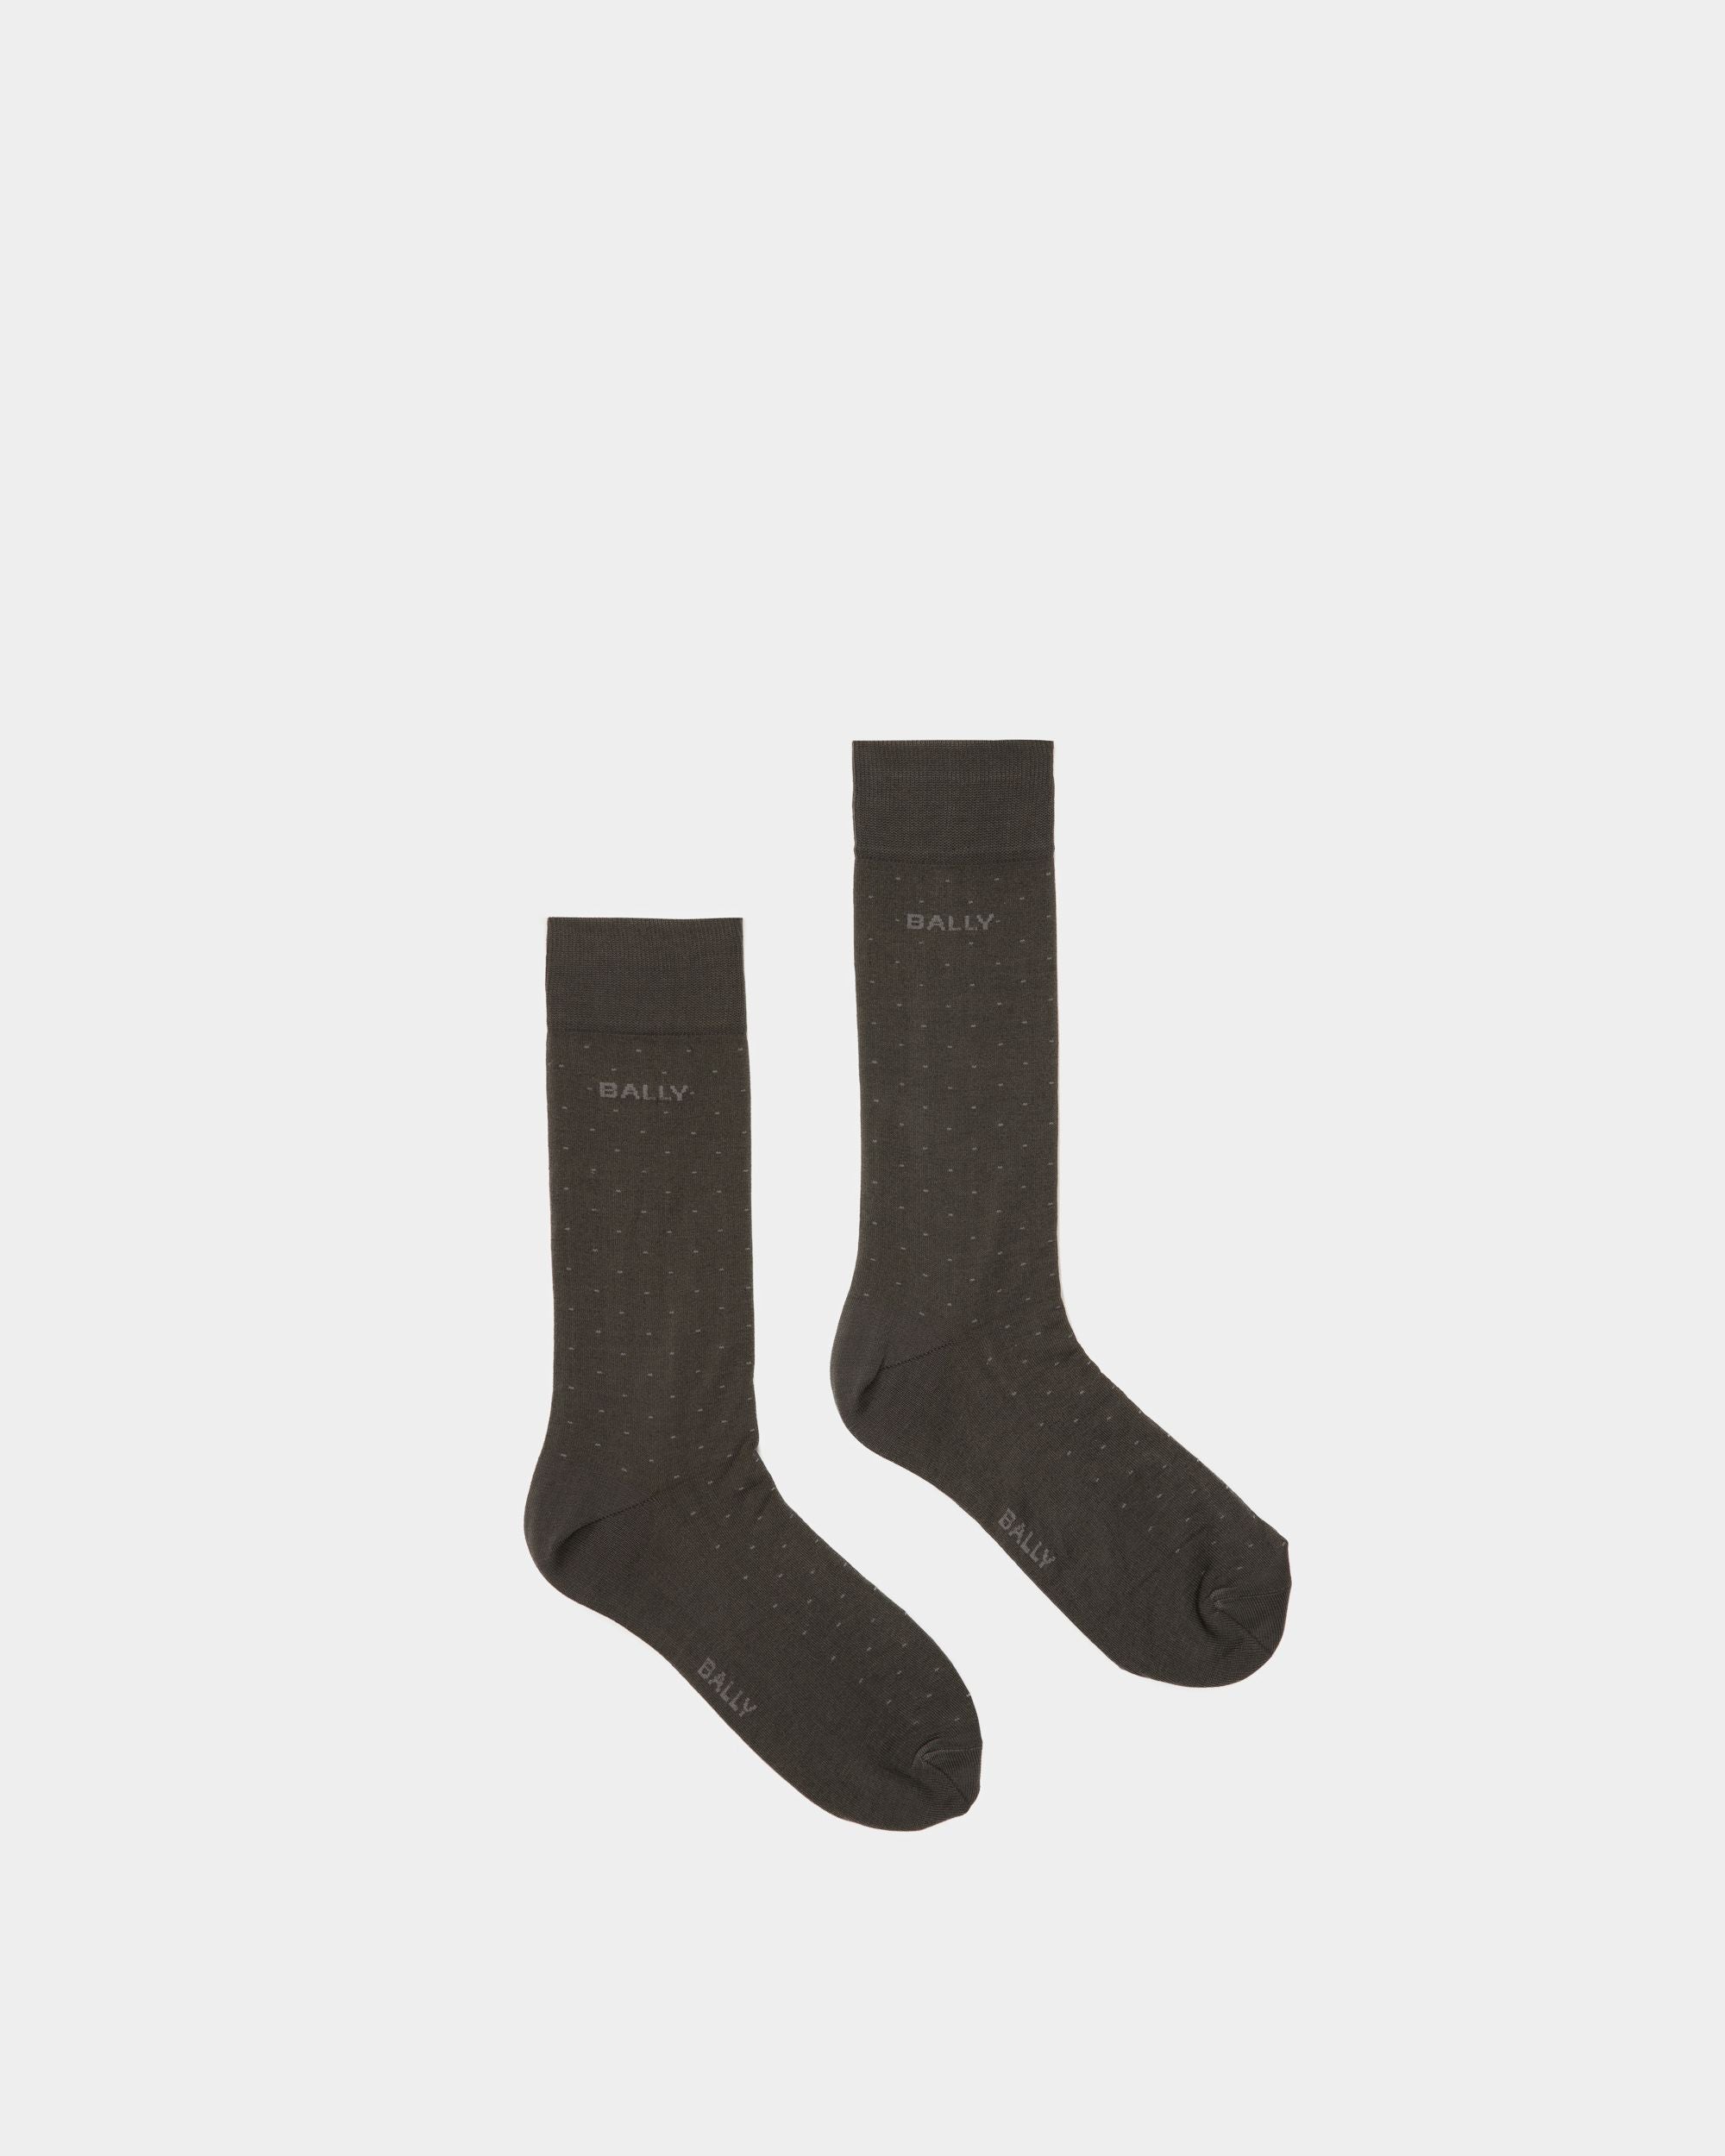 Chaussettes à rayures avec logo | Chaussettes pour homme |Coton mélangé gris | Bally | Still Life Haut